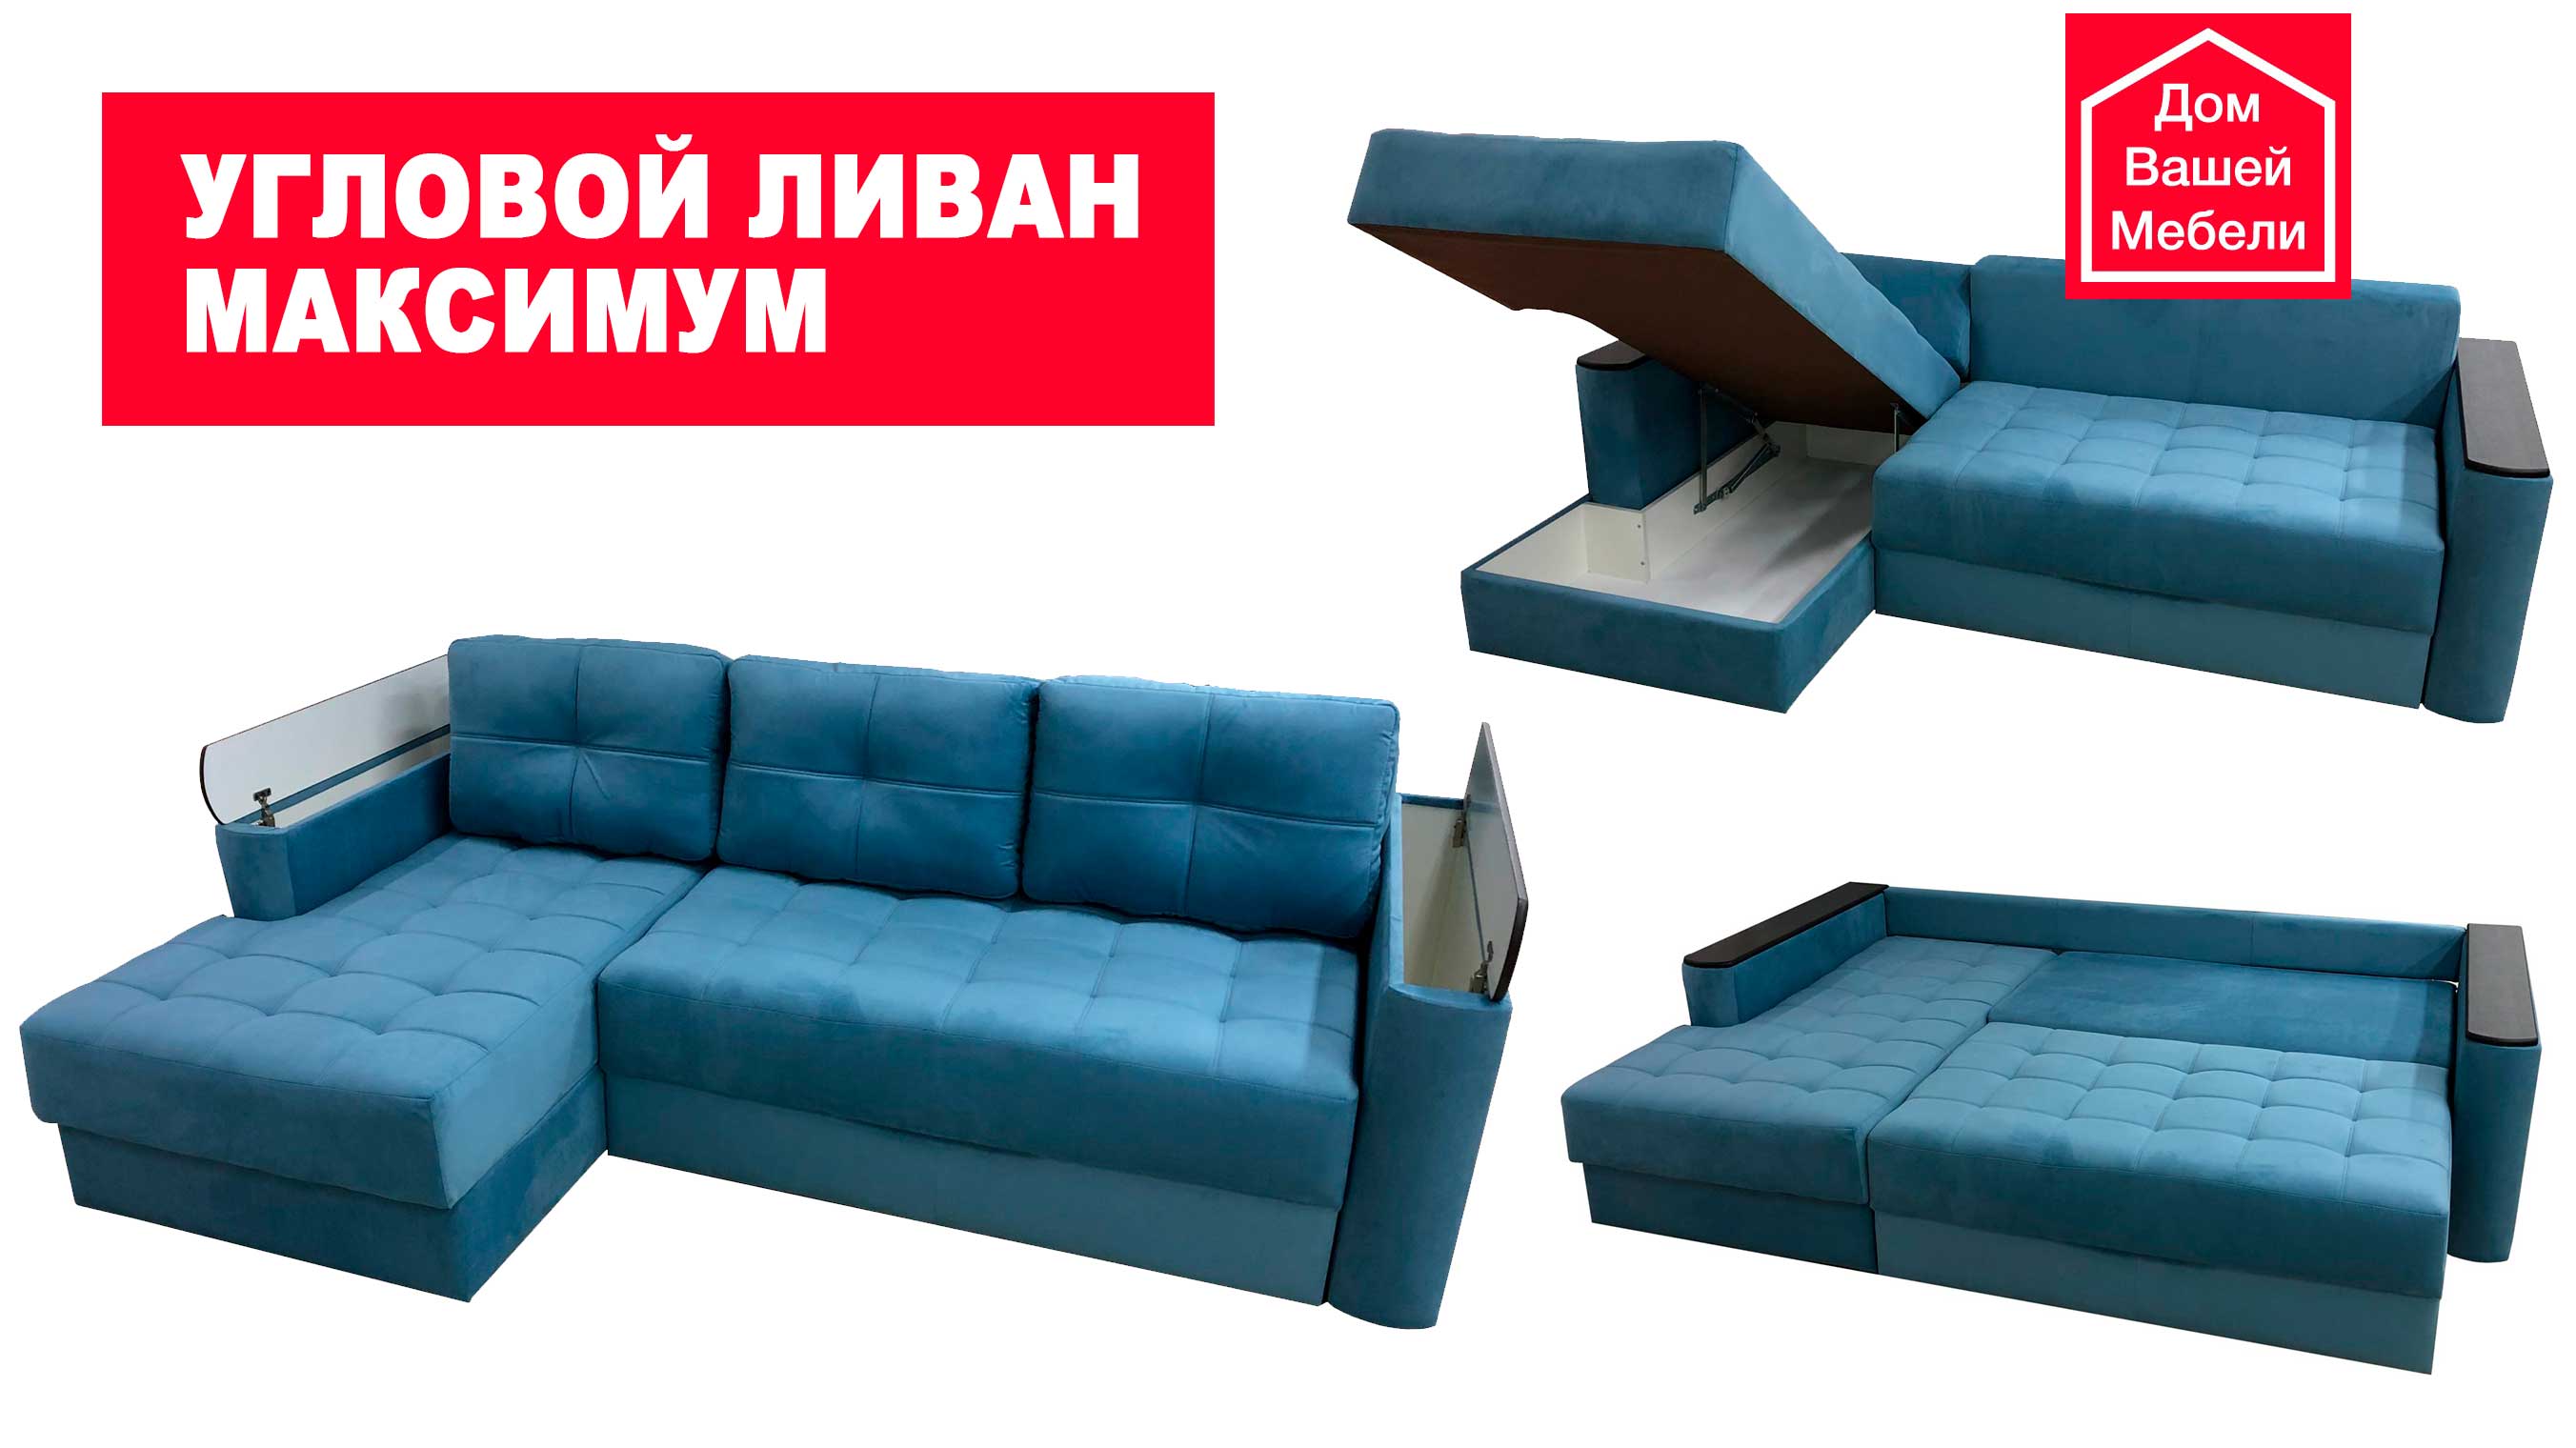 Угловой диван Максимум